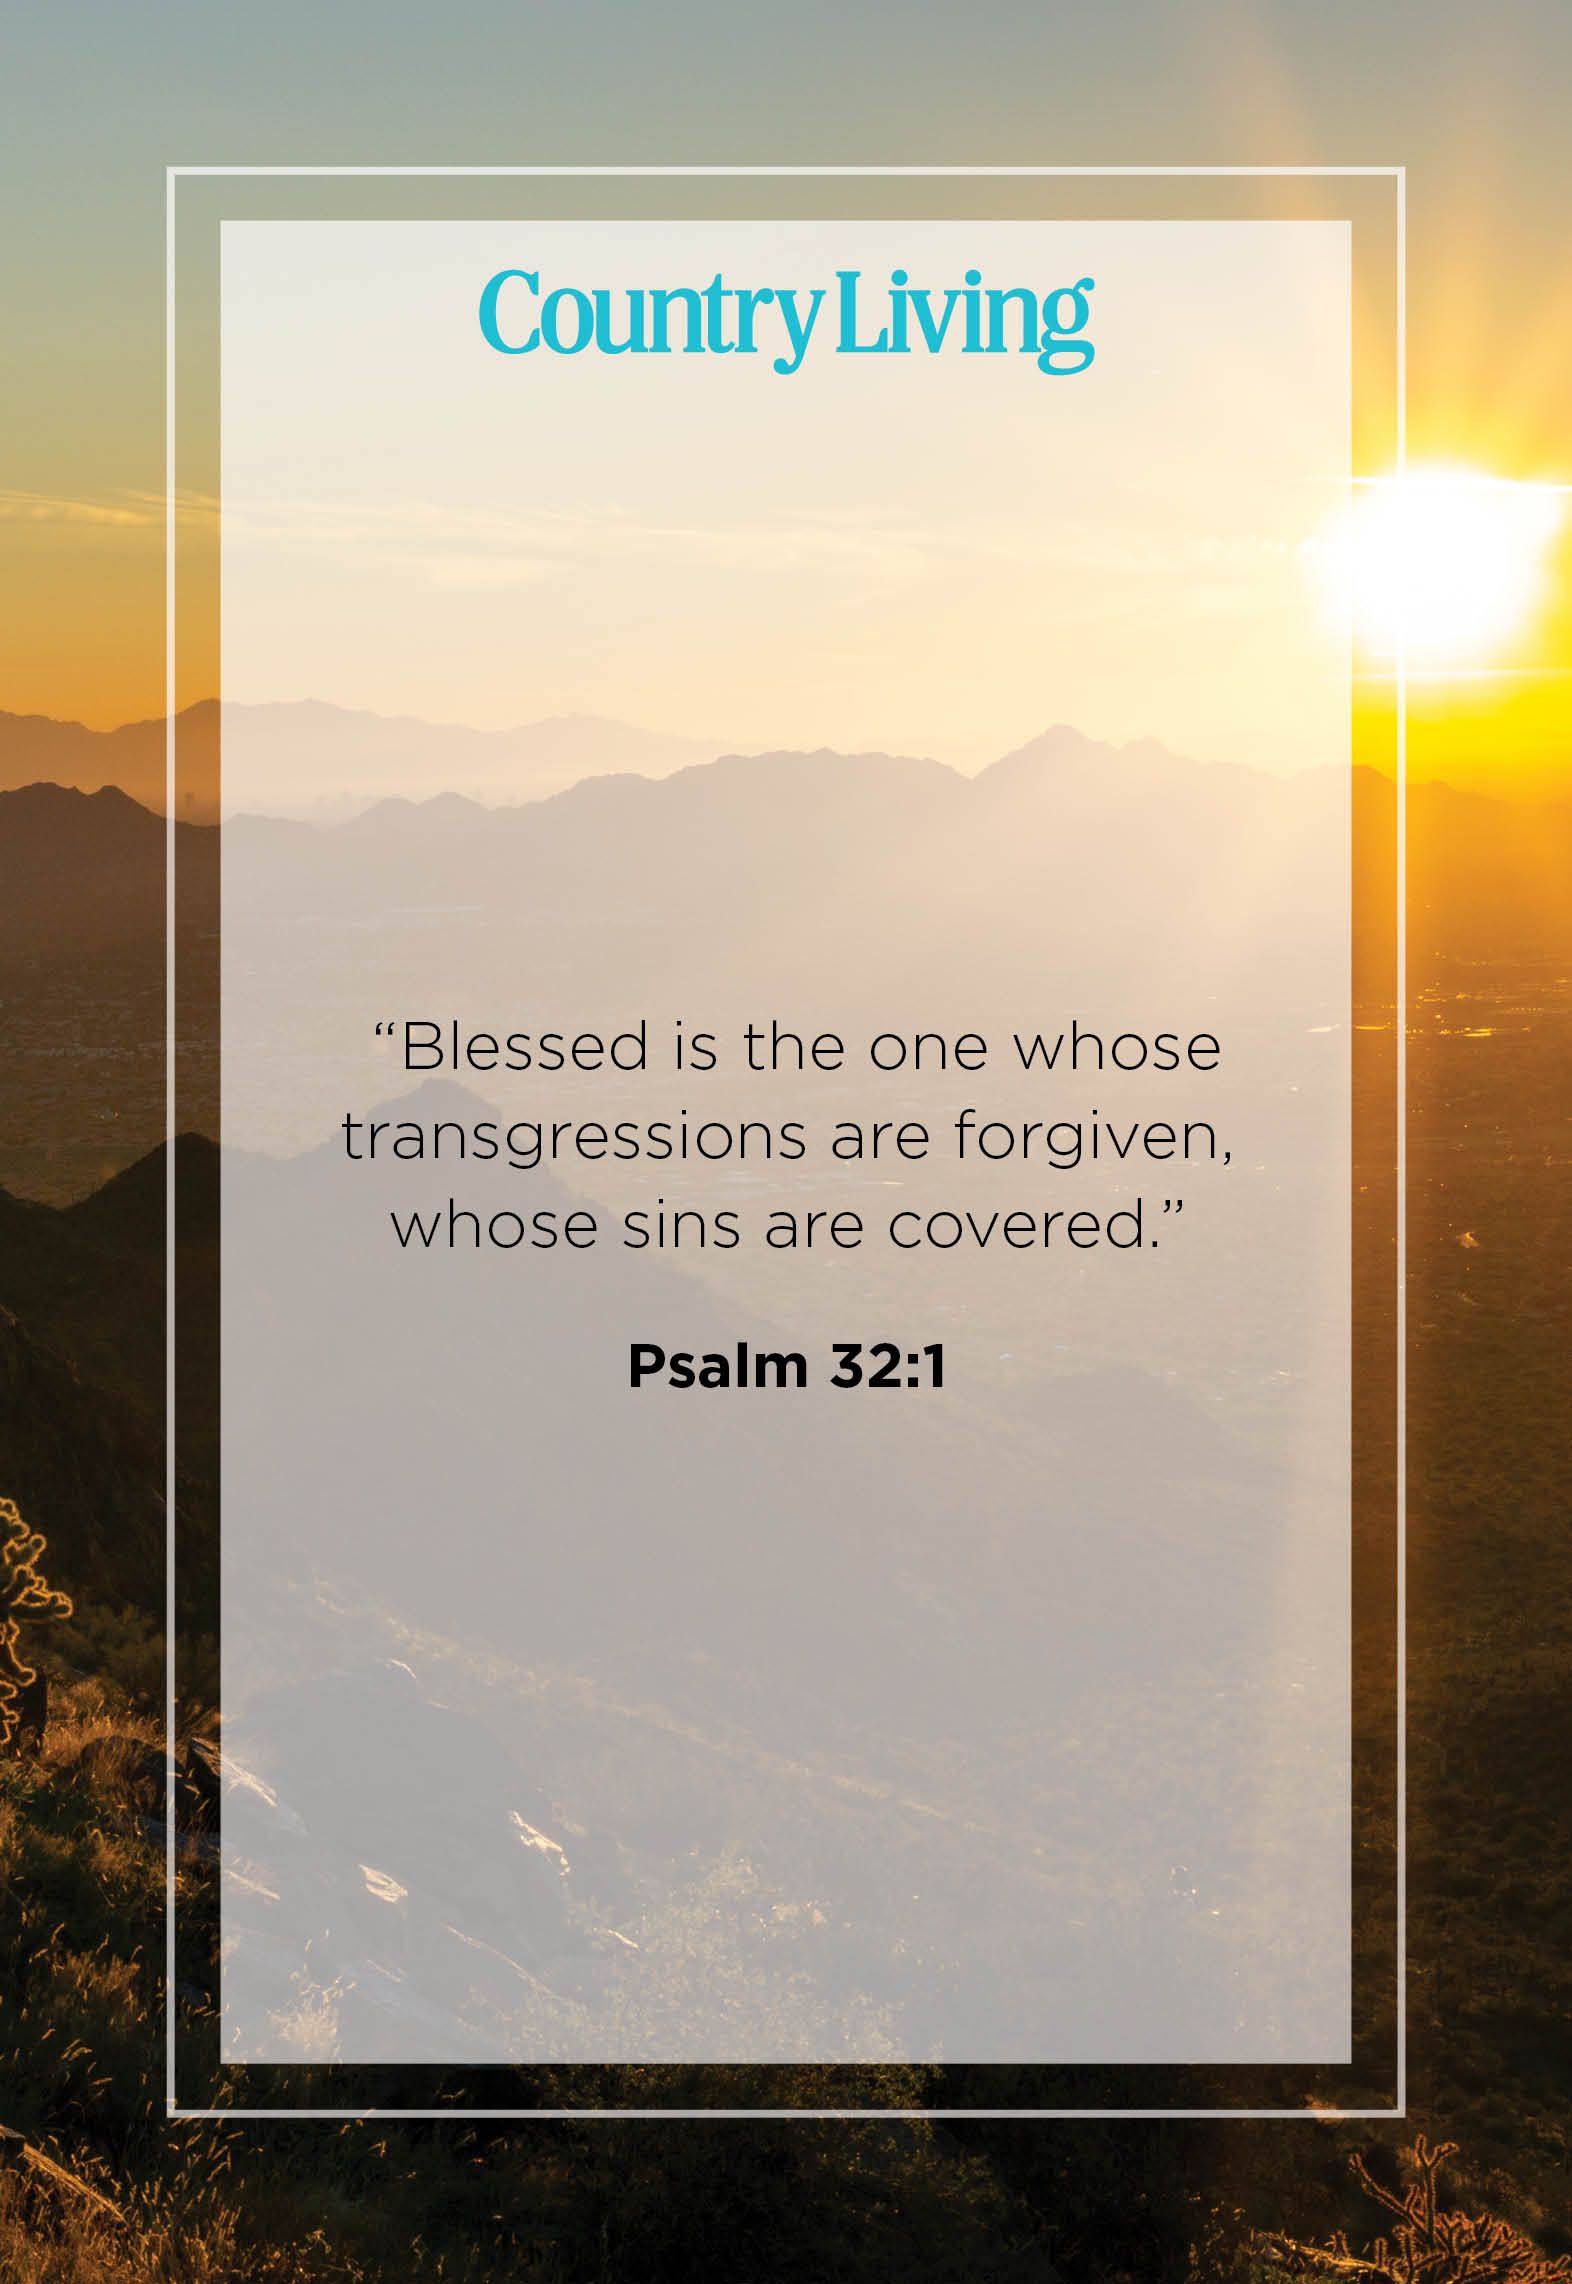 forgiveness jesus